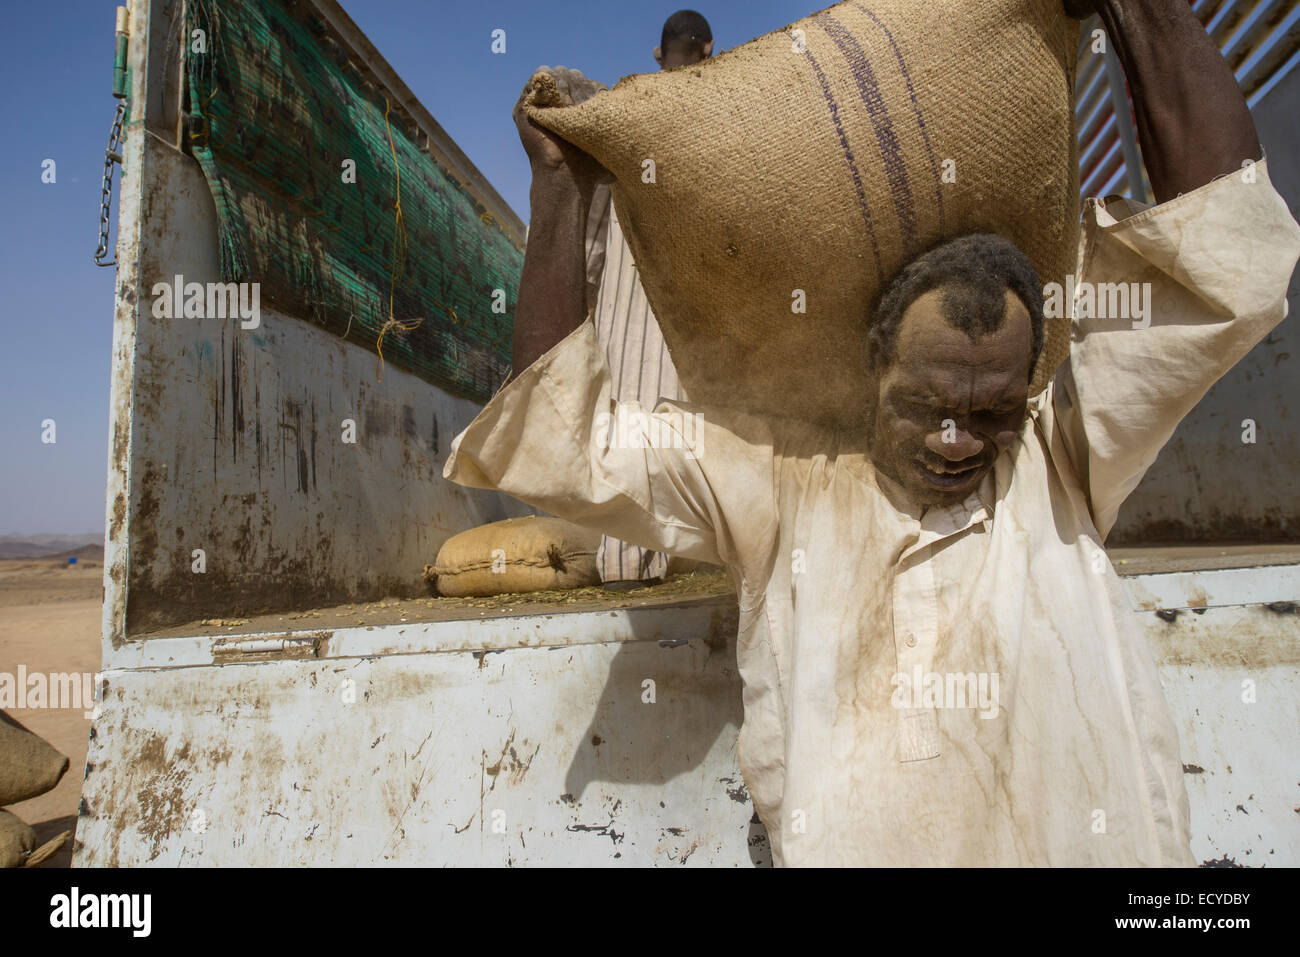 Sudanesische Mann entladen Säcke Faba Bohnen in der Wüste Sahara, Sudan Stockfoto